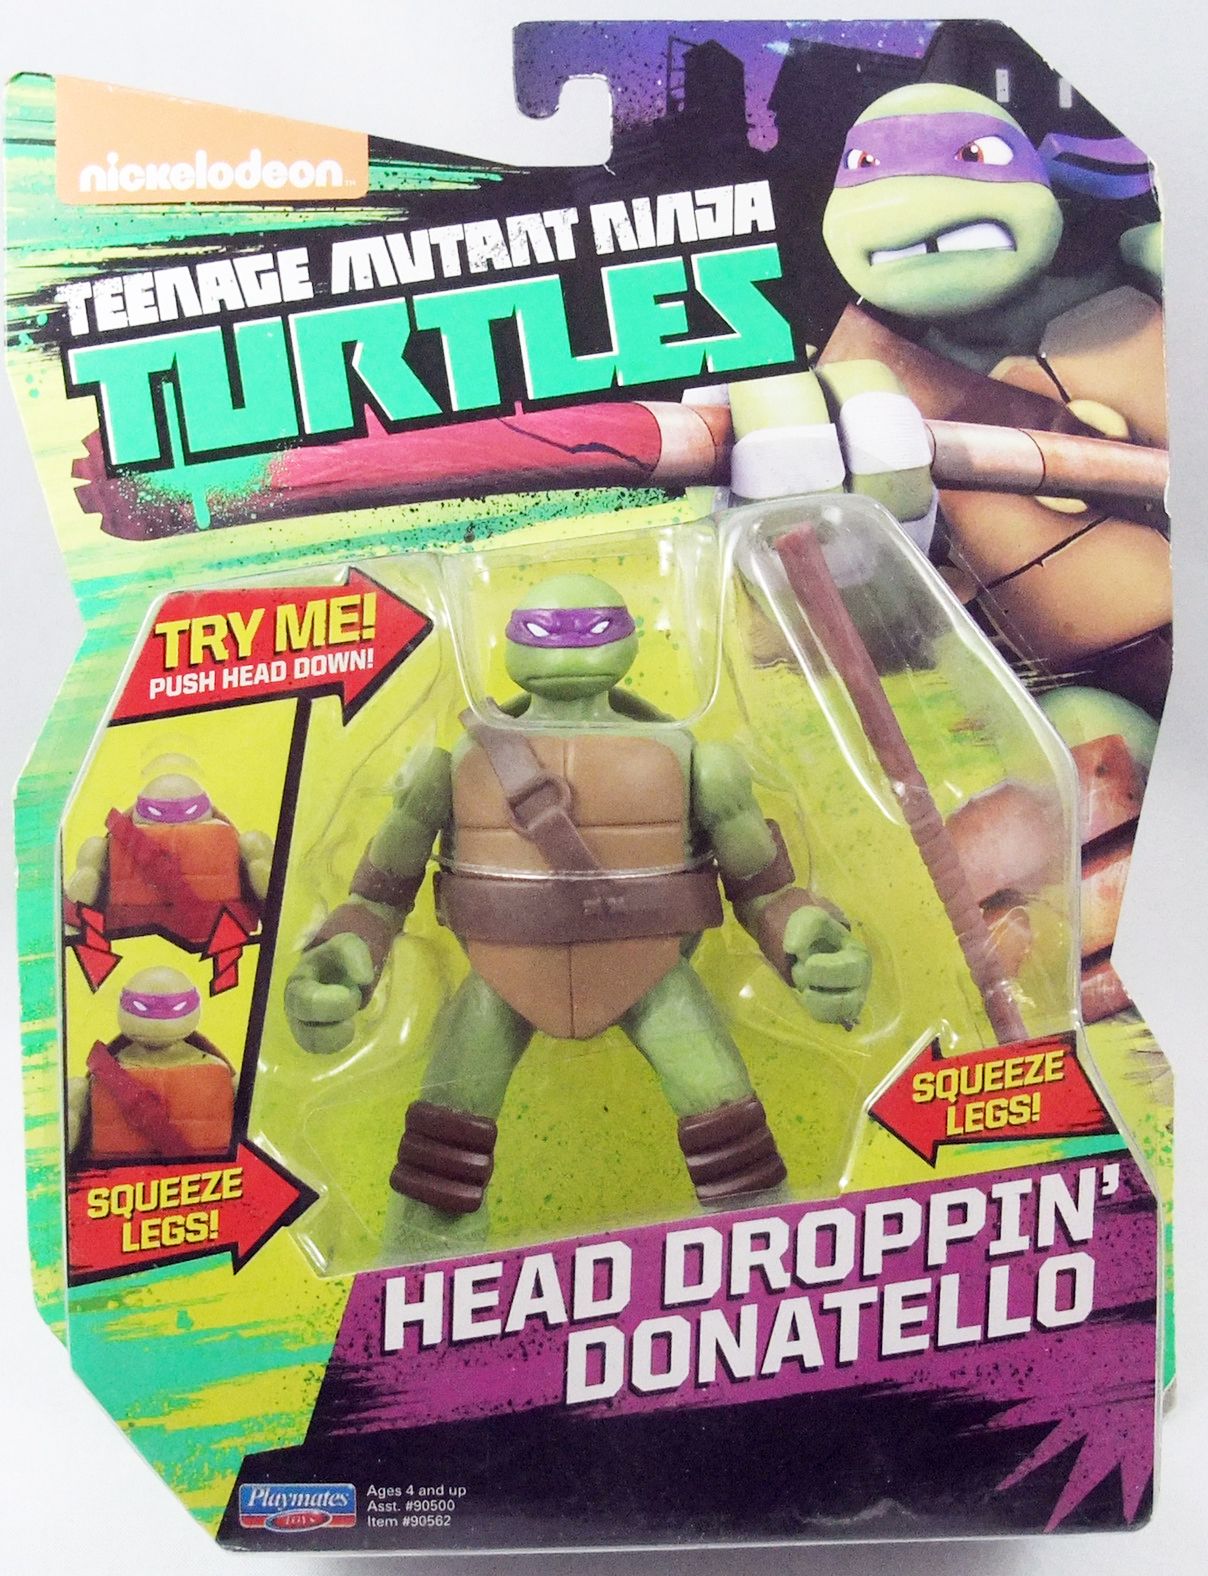 Donatello, Nickelodeon